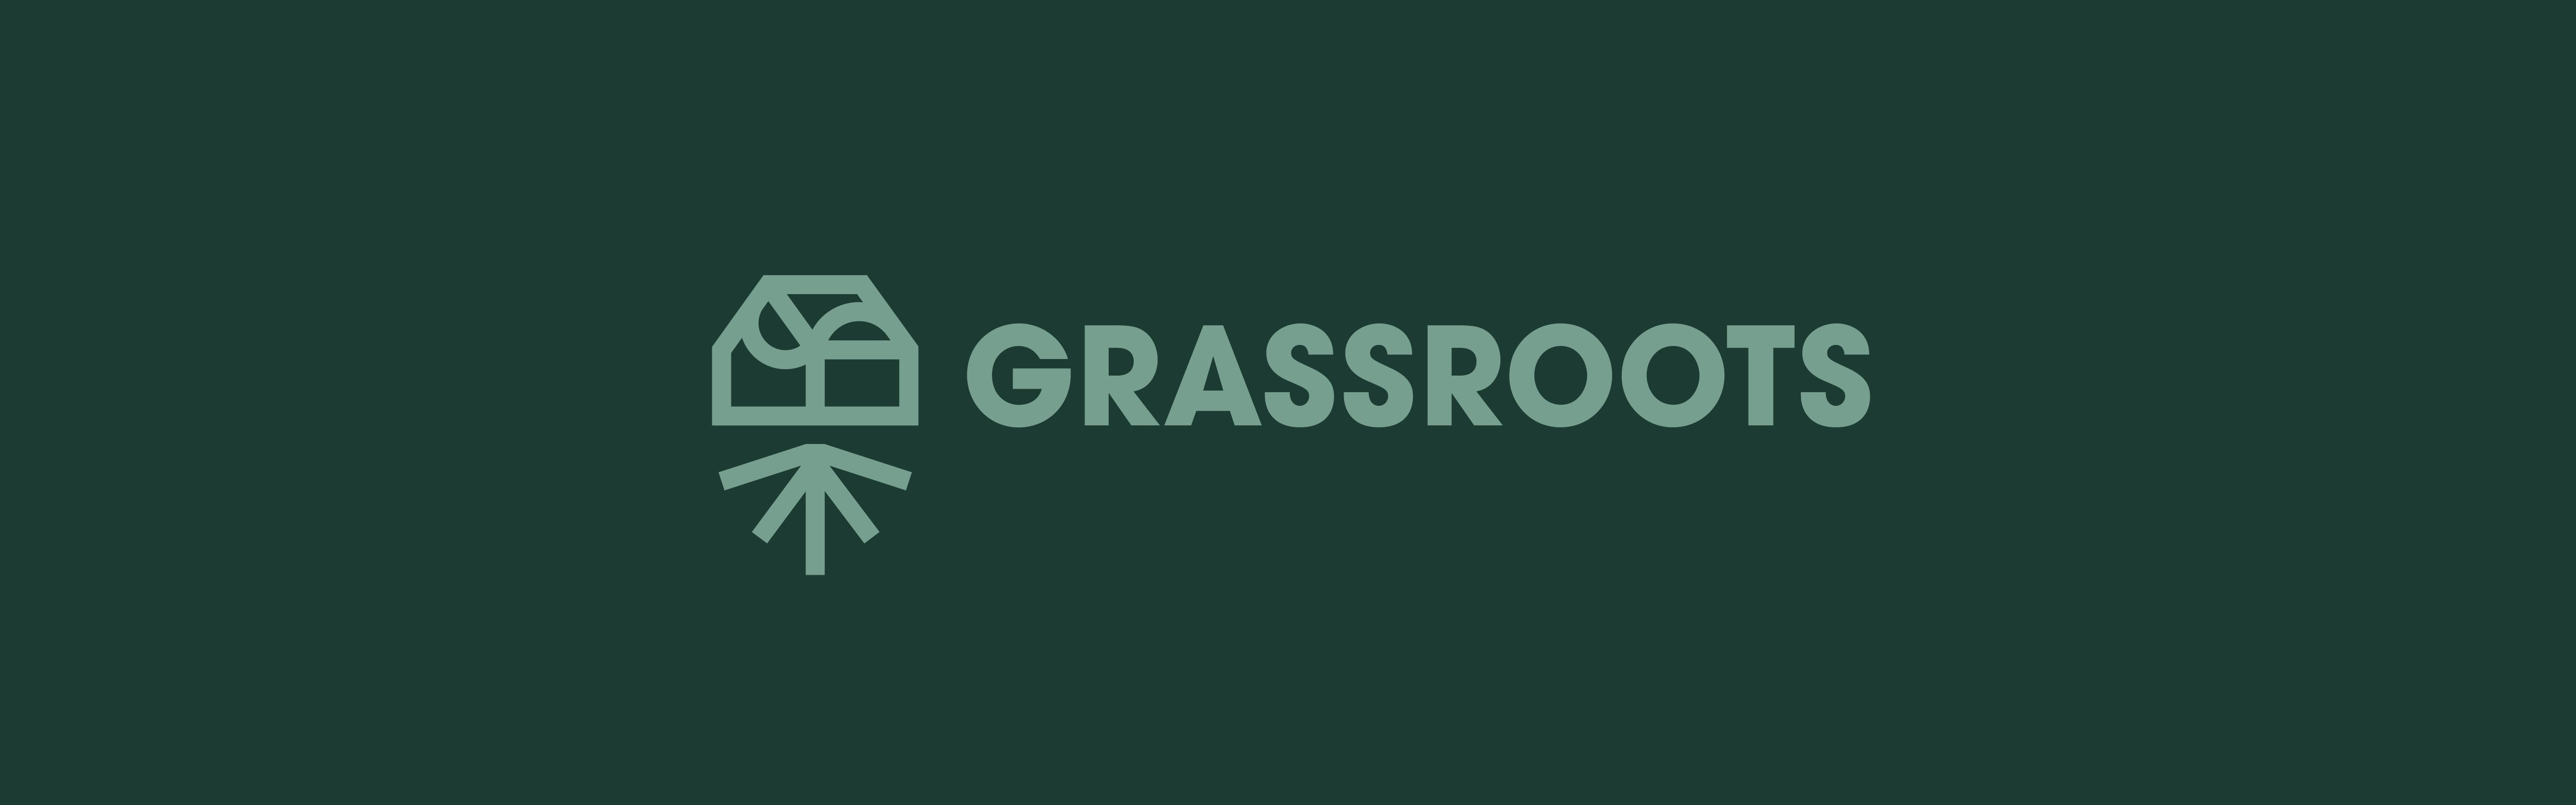 Grassroots Cannabis banner